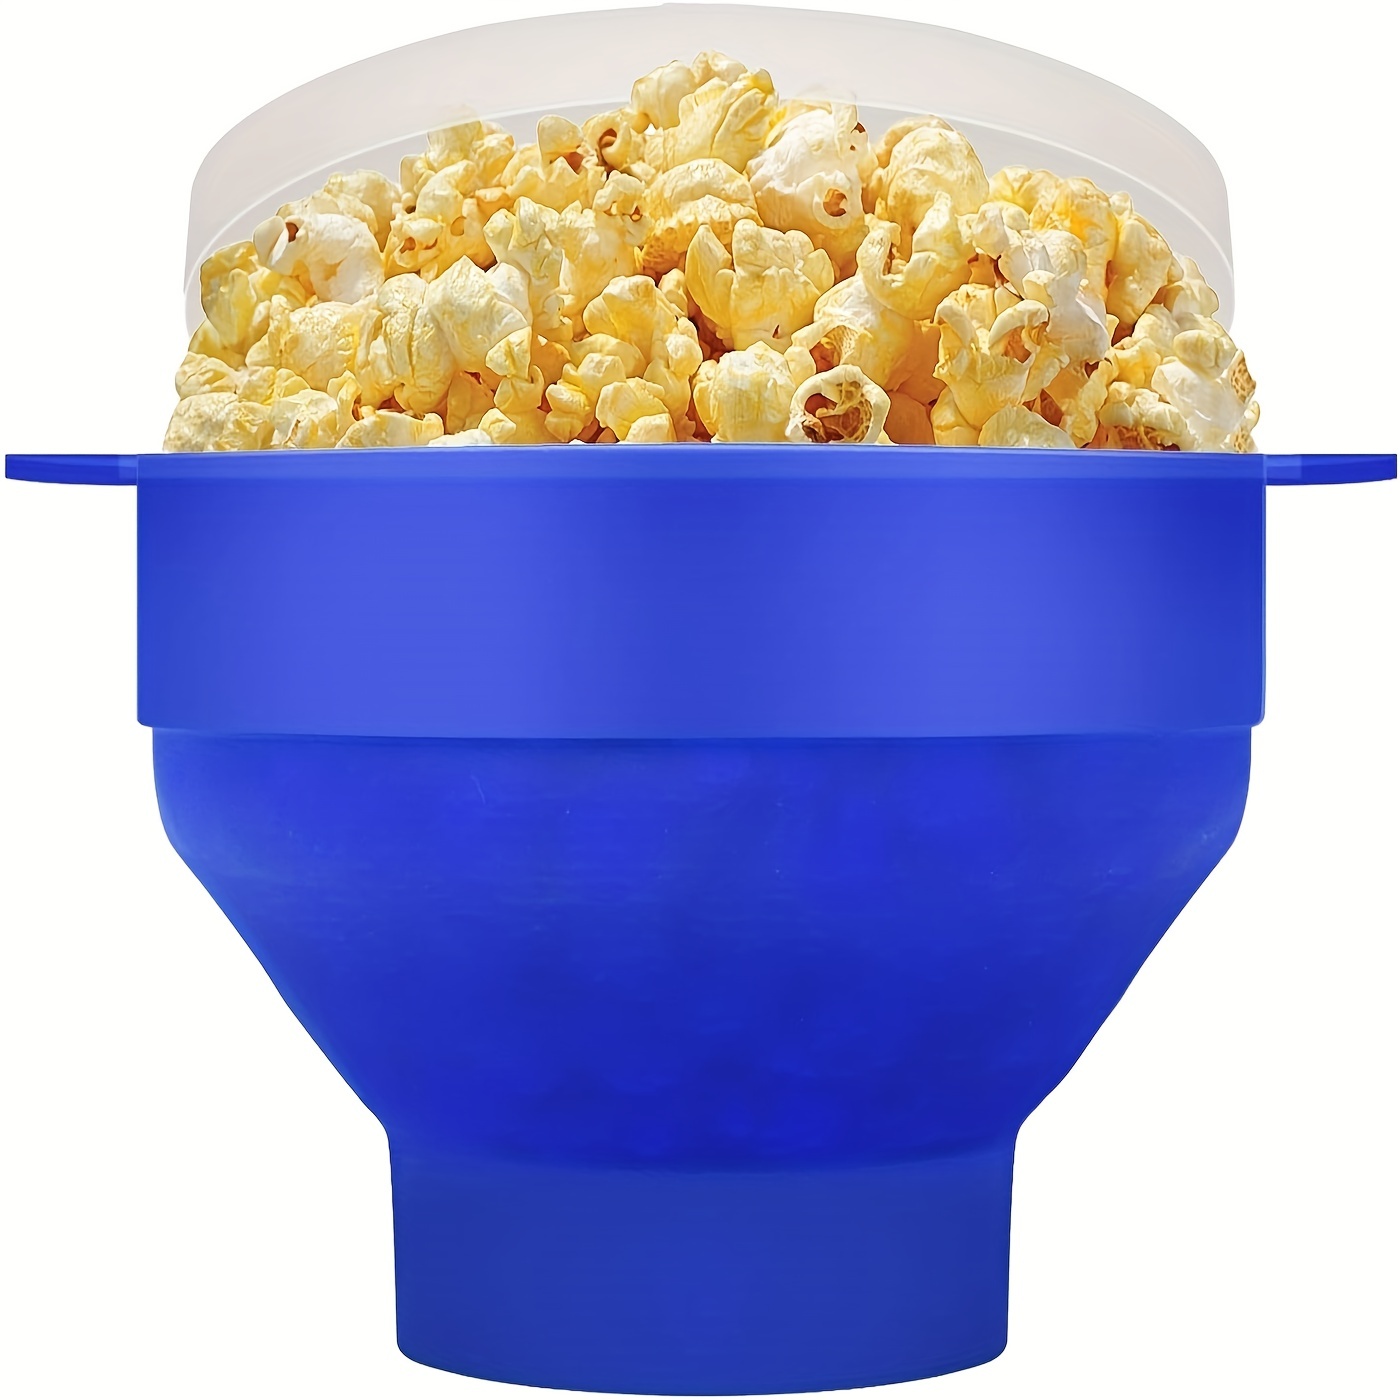 Family-Size Microwave Popcorn Maker - Shop